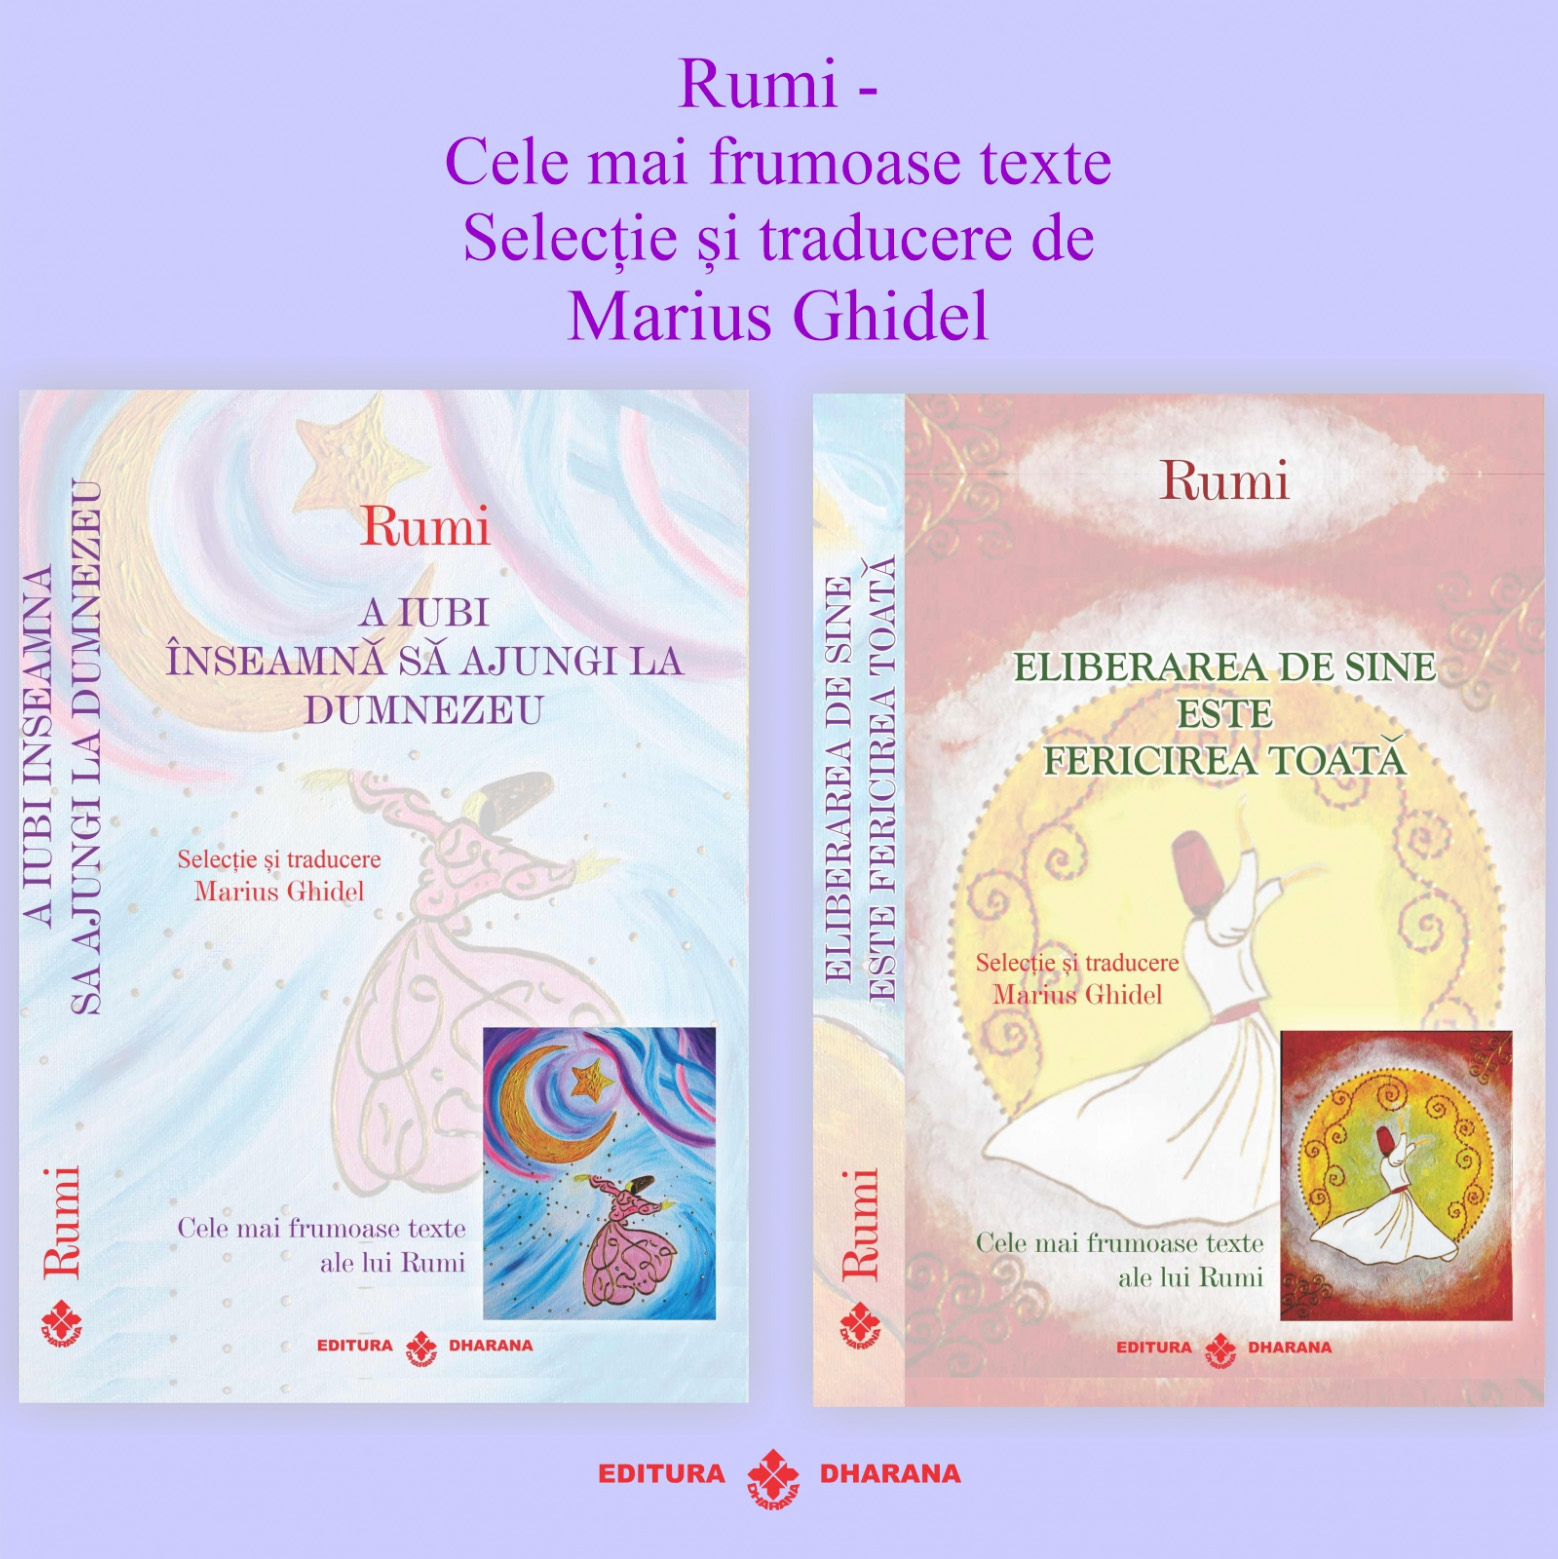 Set carti Rumi – Cele mai frumoase texte: A iubi inseamna sa ajungi la Dumnezeu / Eliberarea de sine este fericirea toata | Rumi carturesti.ro Carte